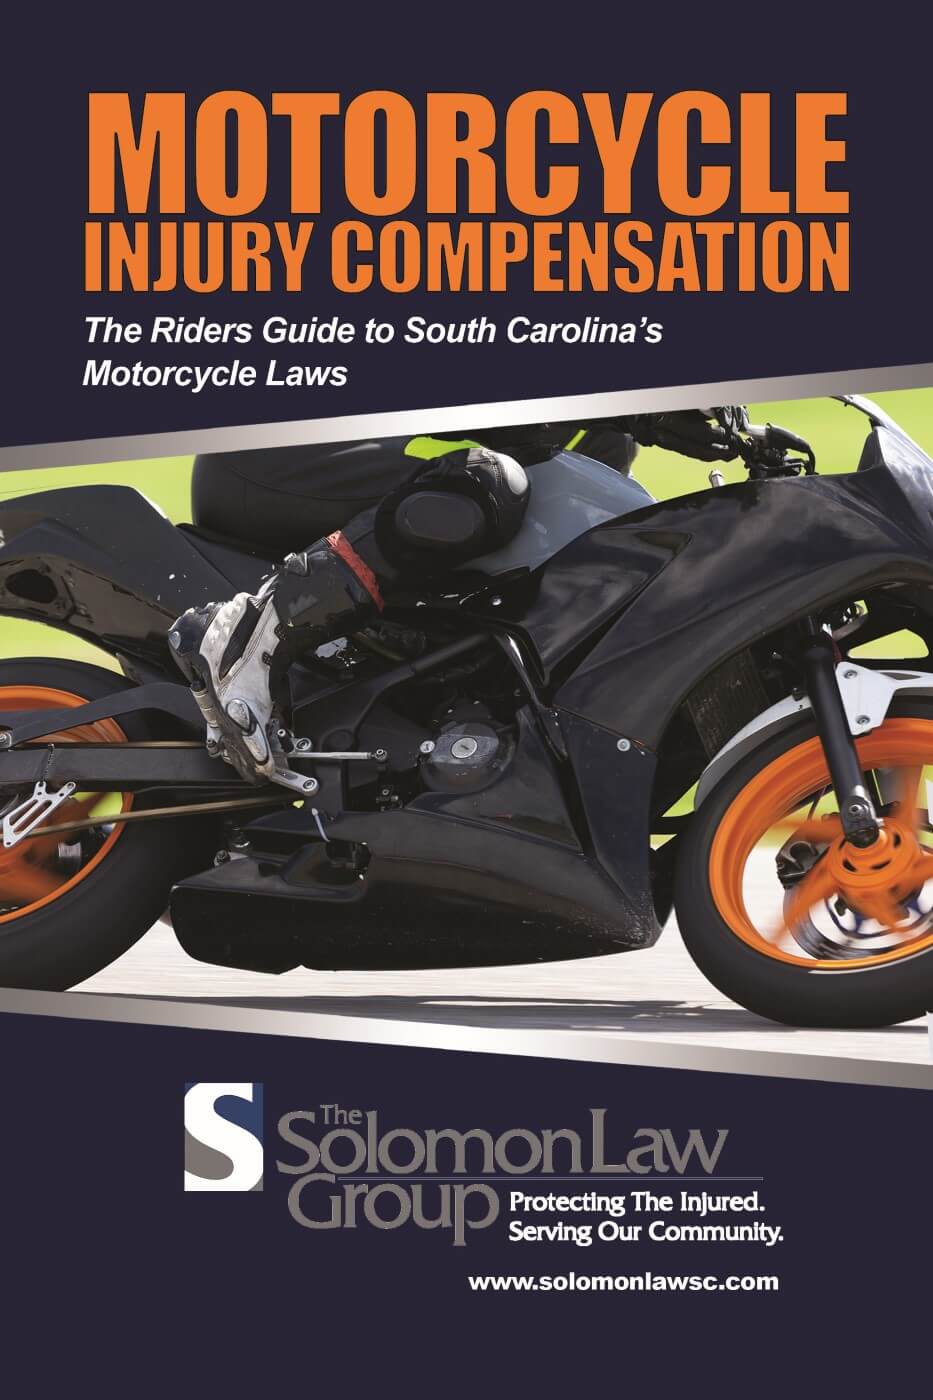 carl-solomon-motorcycle-injury-compensation-ebook-1000